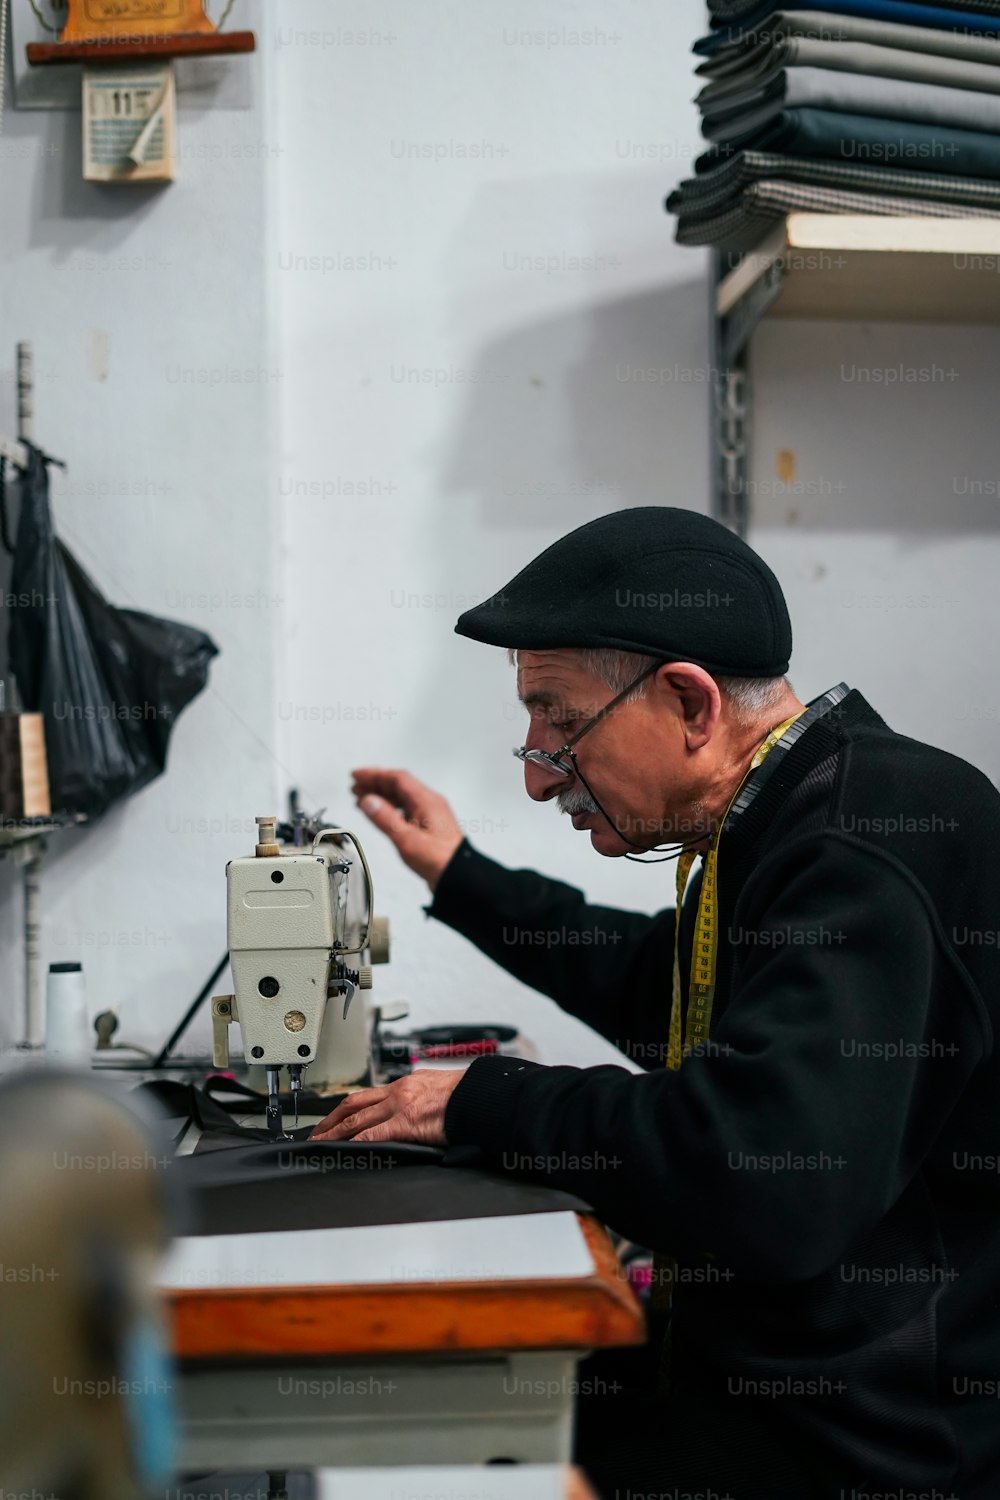 Un vecchio sta lavorando su una macchina da cucire